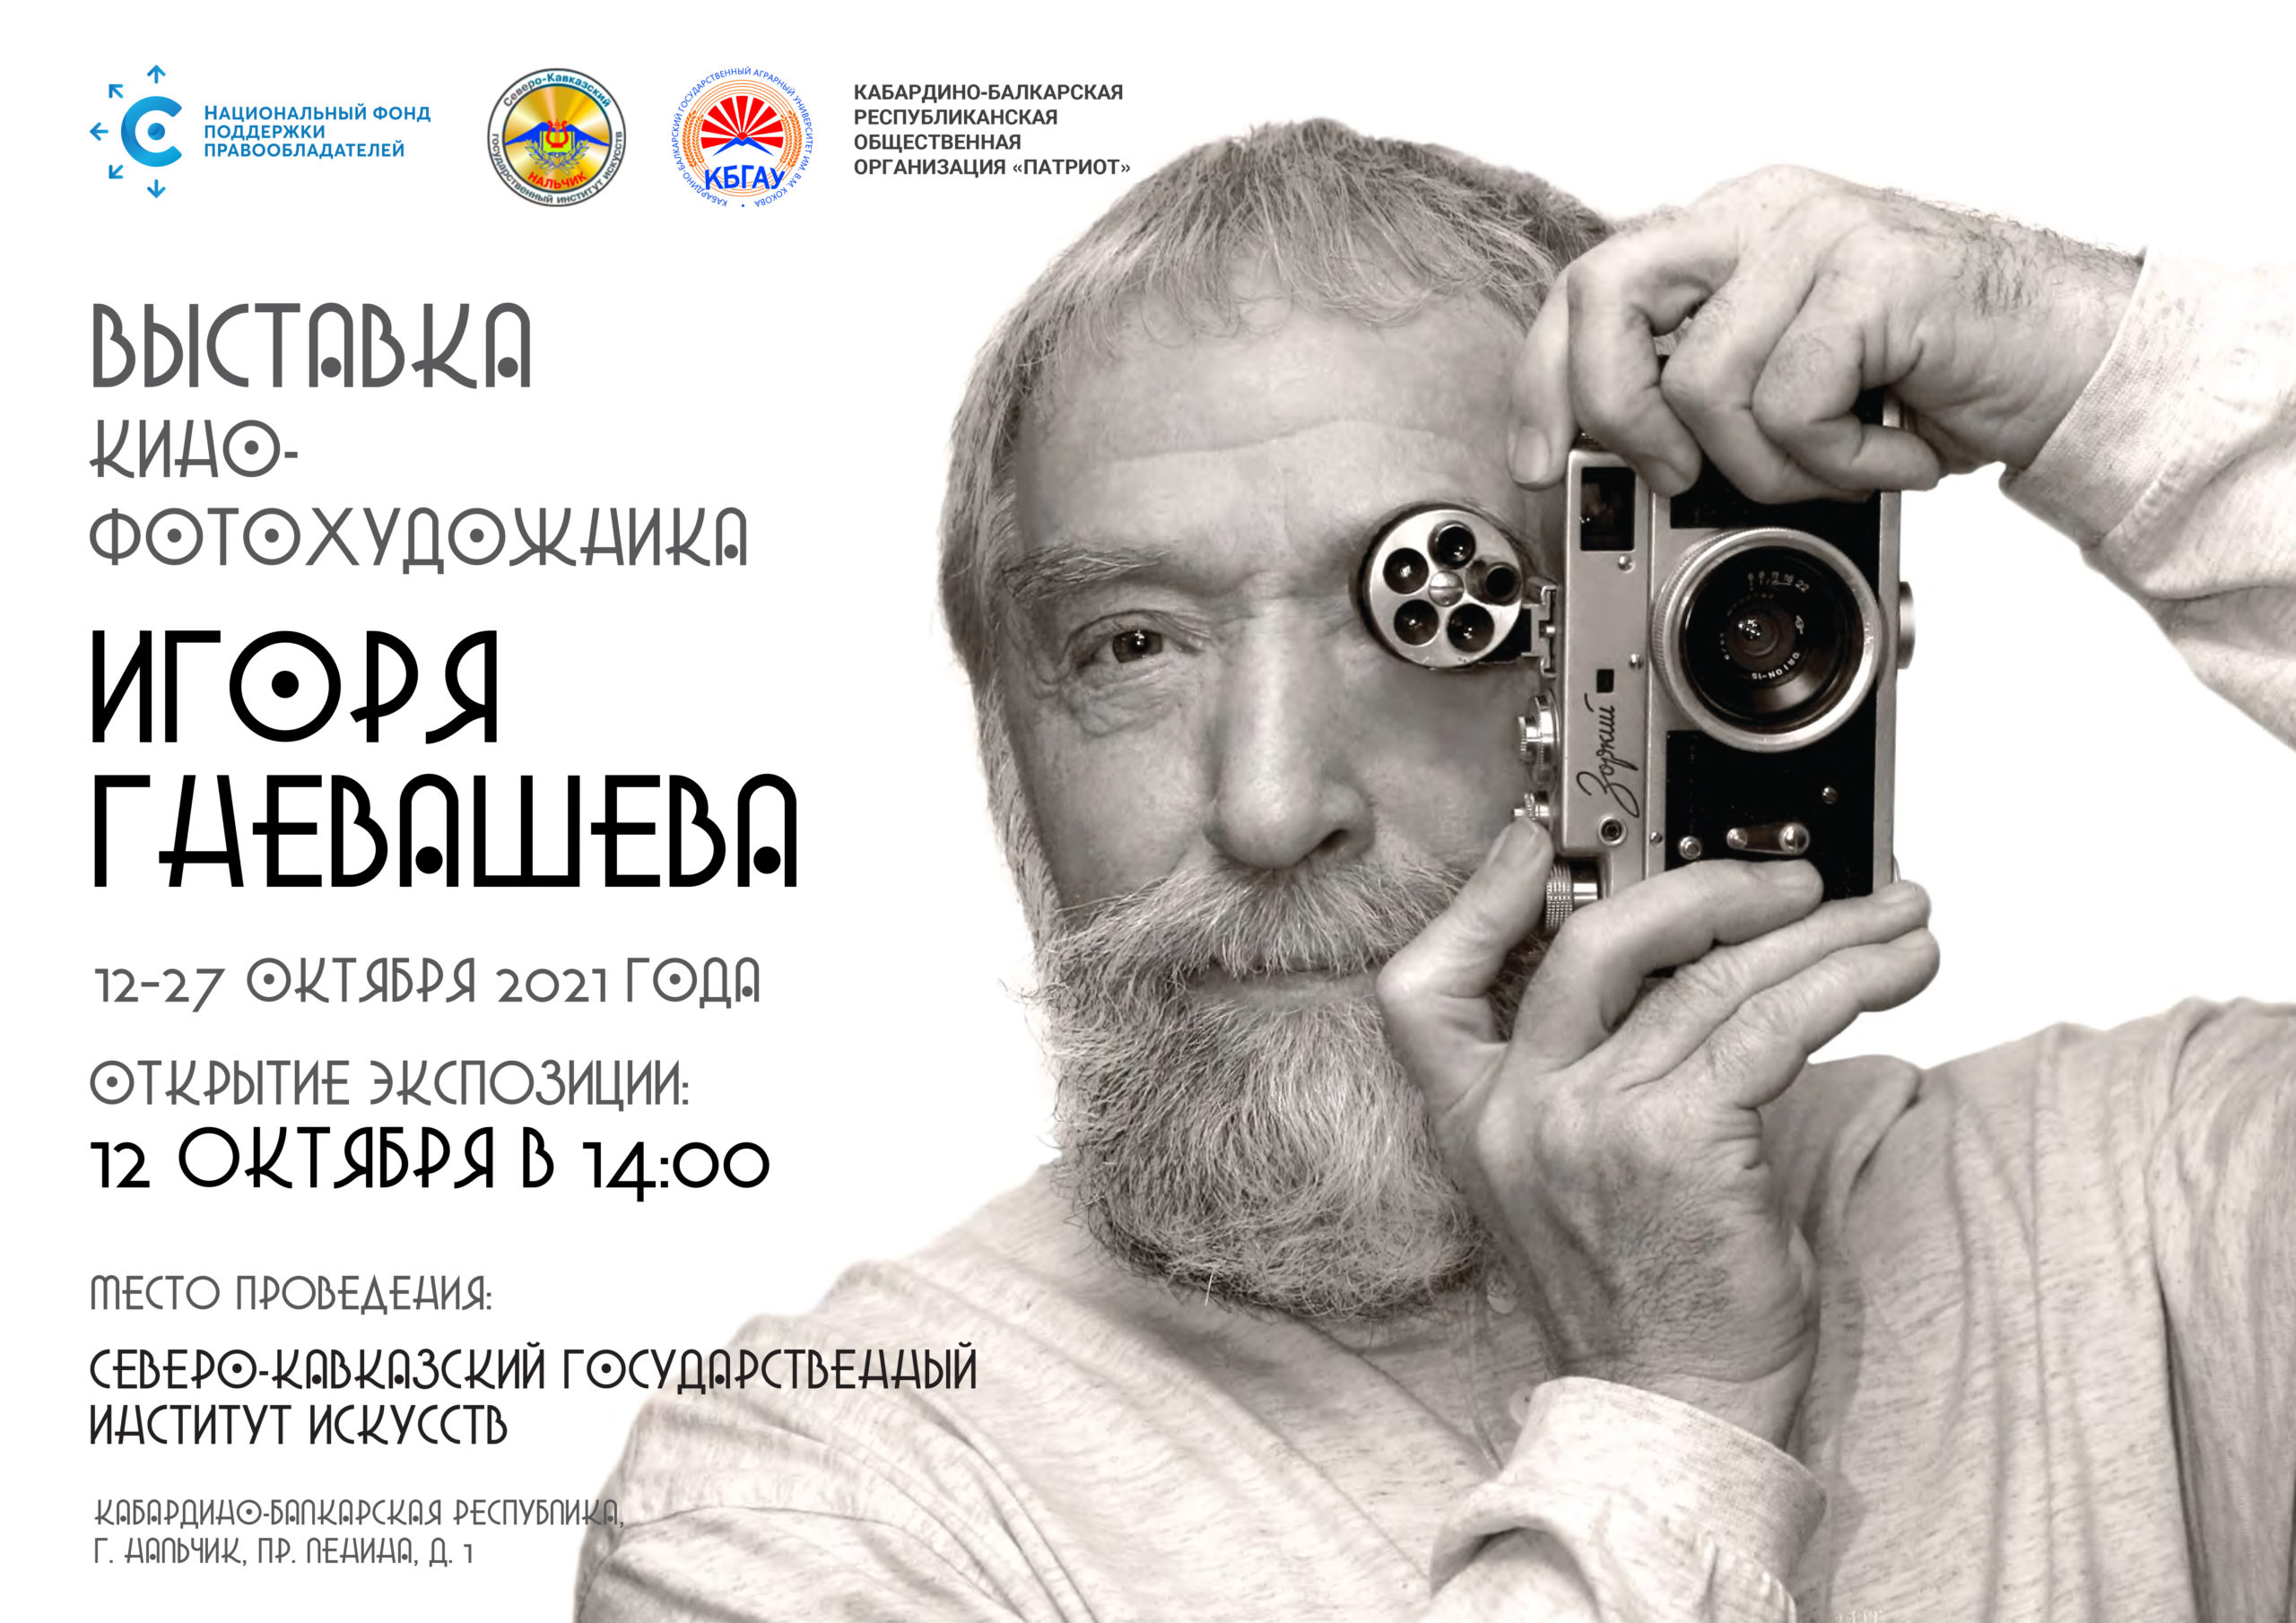 В Нальчике пройдет выставка фоторабот Игоря Гневашева, организованная НФПП